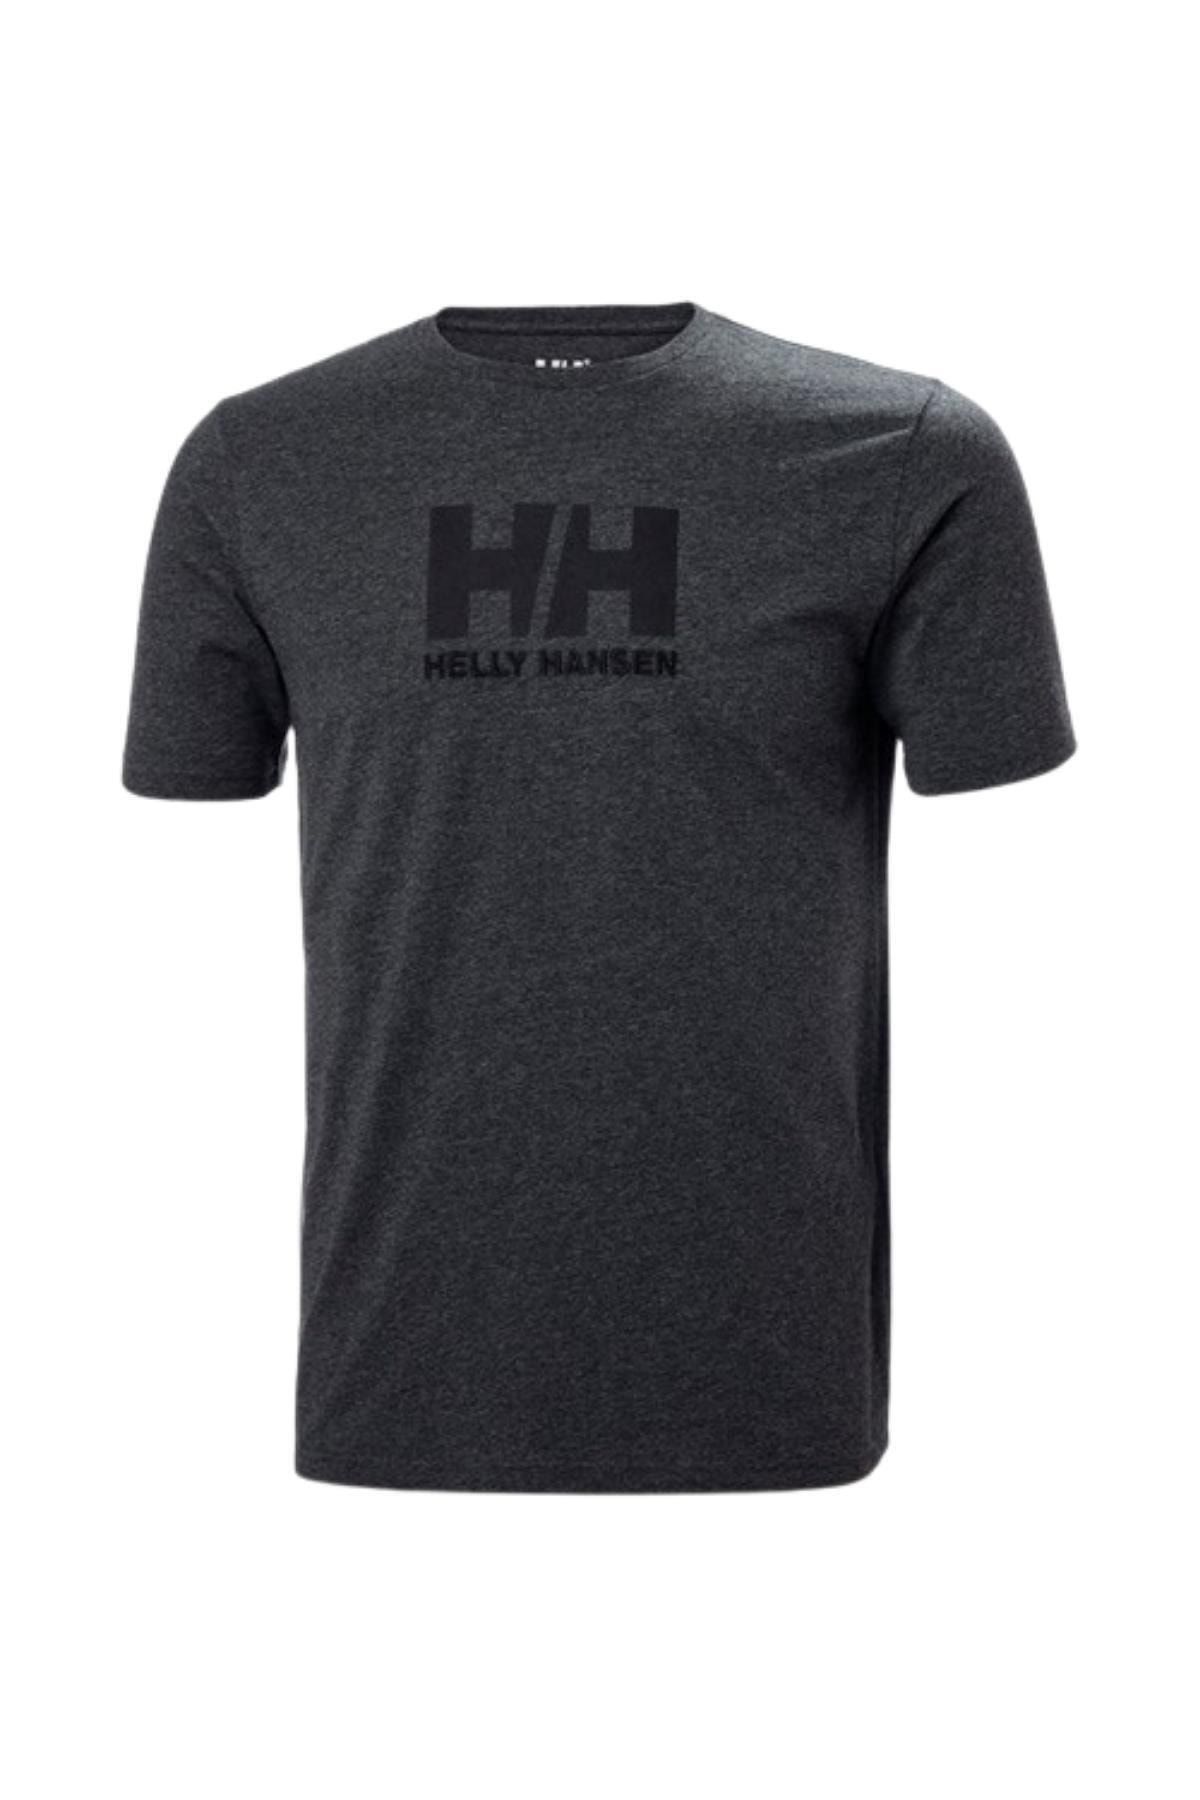 Helly Hansen Hha.33979 - Hh Logo Erkek T-shirt